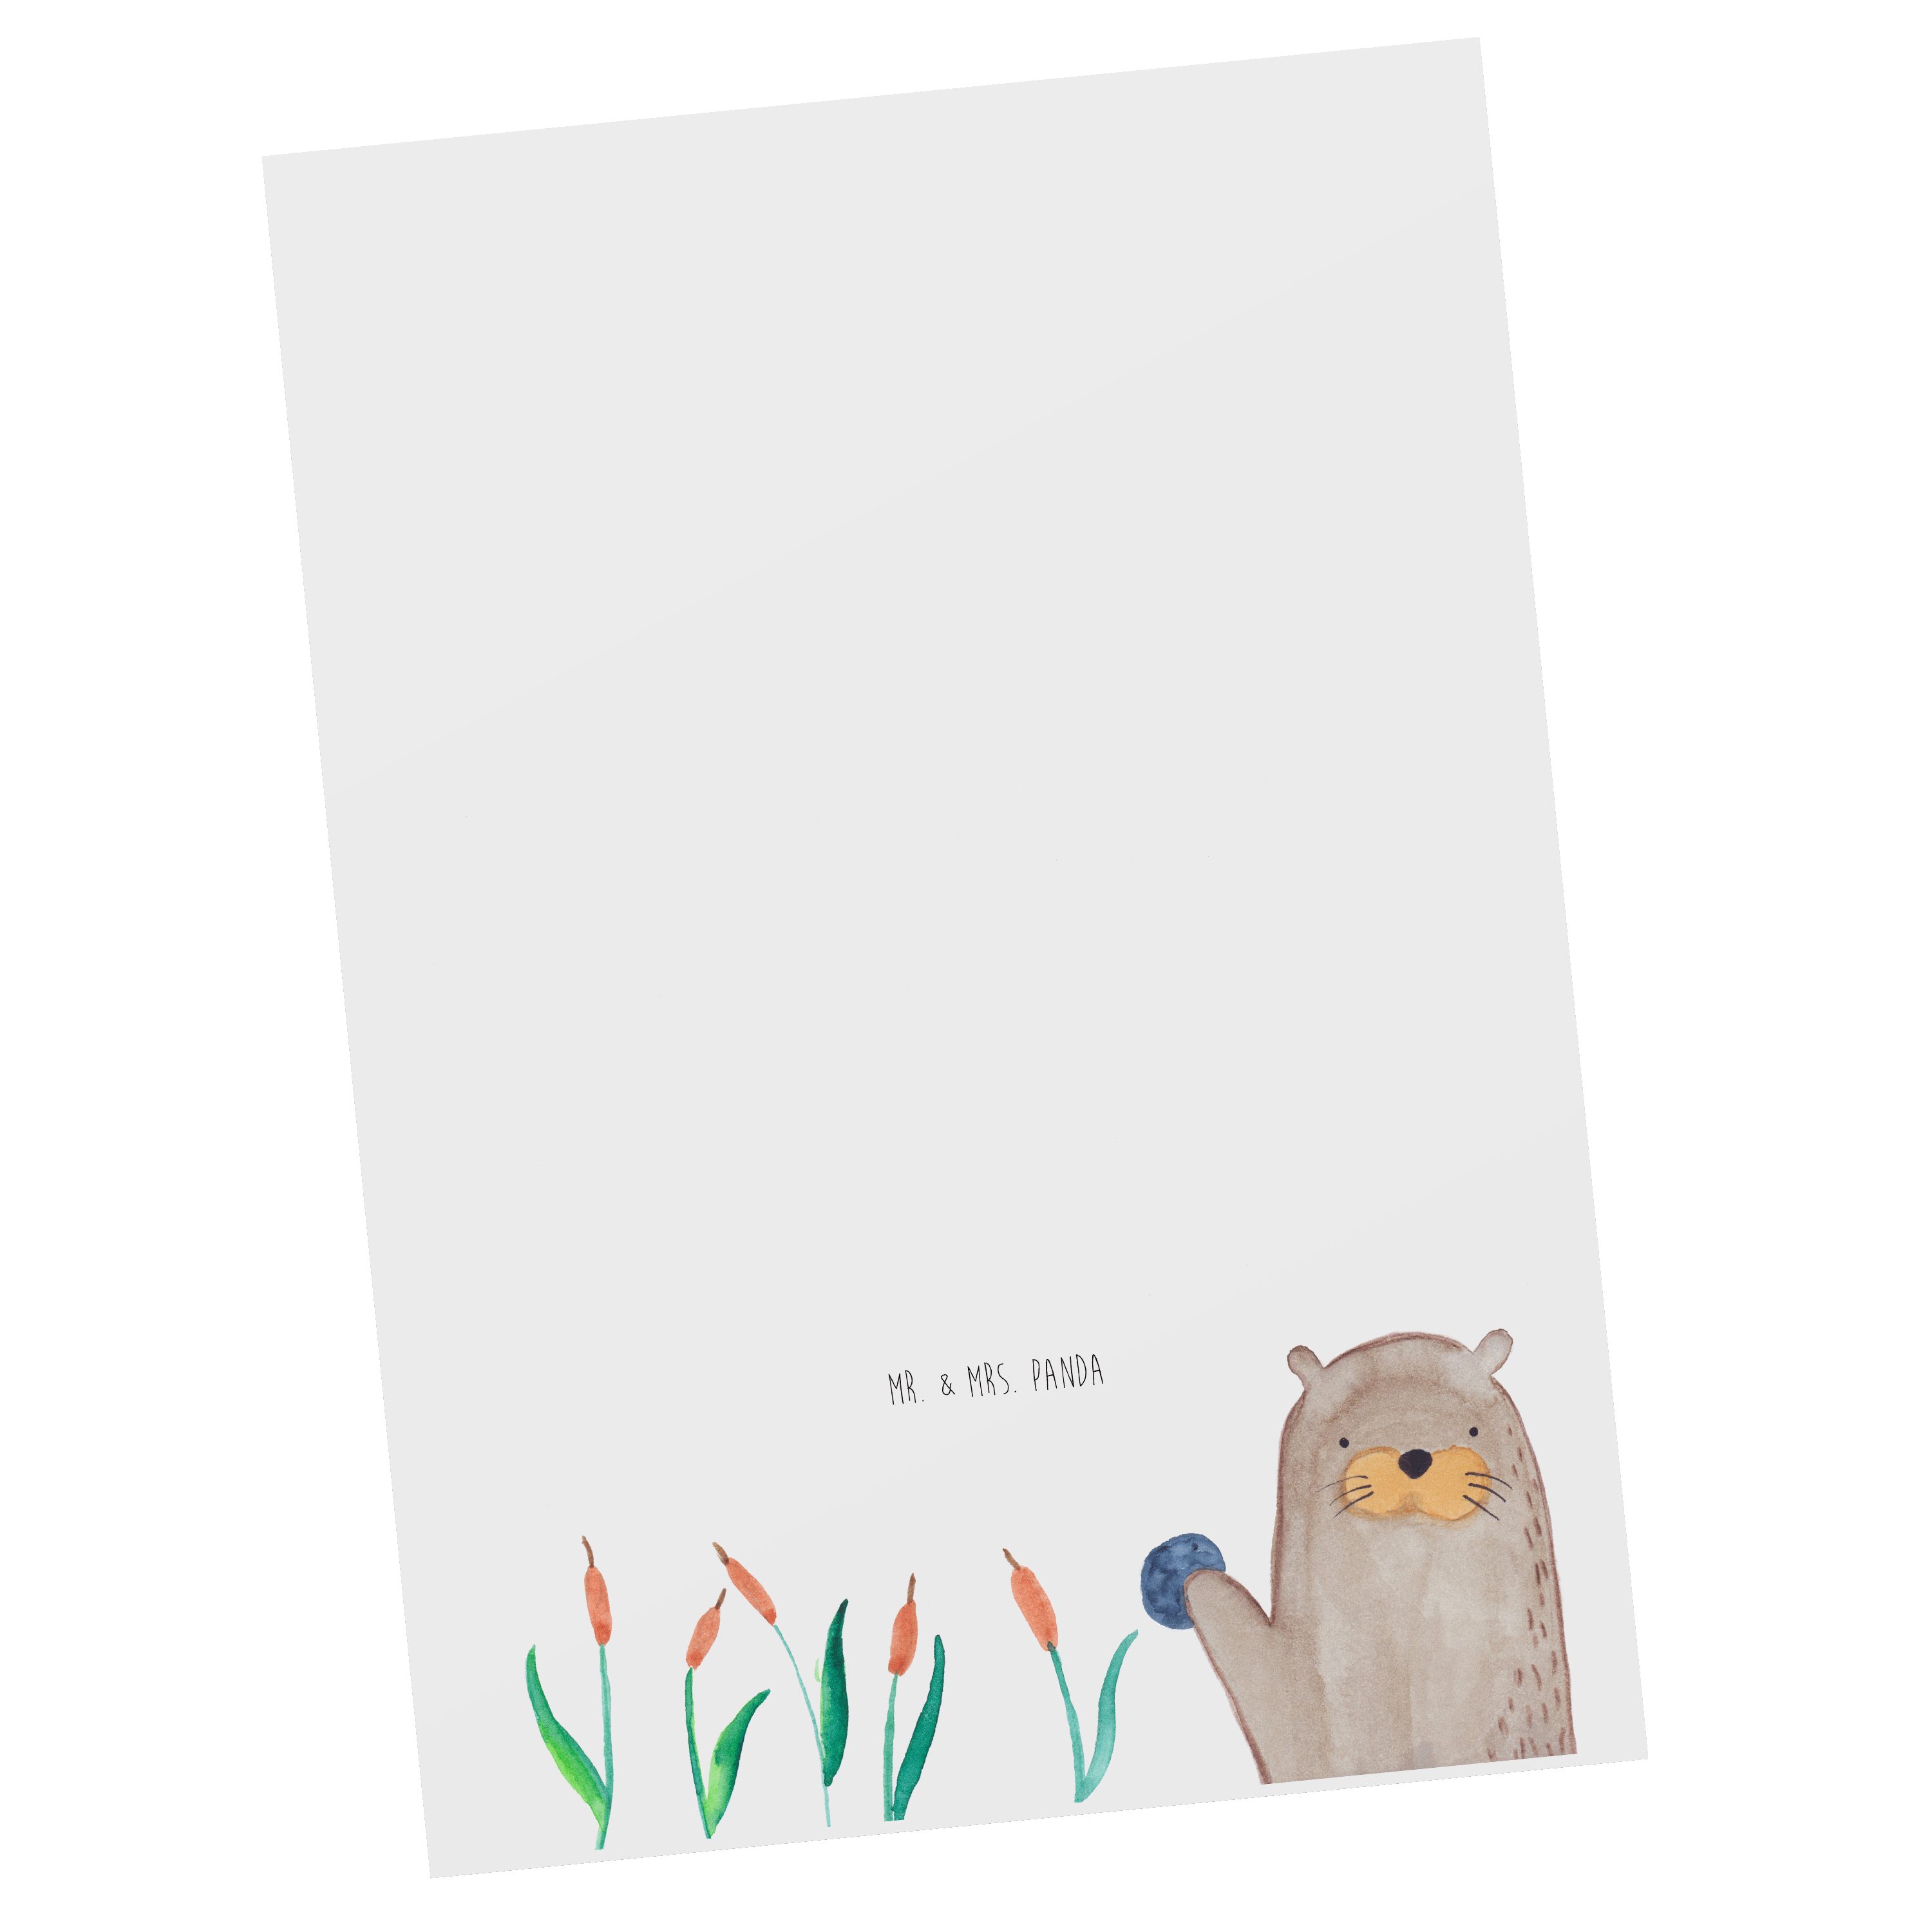 Mr. & Mrs. Panda Postkarte Otter mit Stein - Weiß - Geschenk, Einladung, Dankeskarte, Seeotter